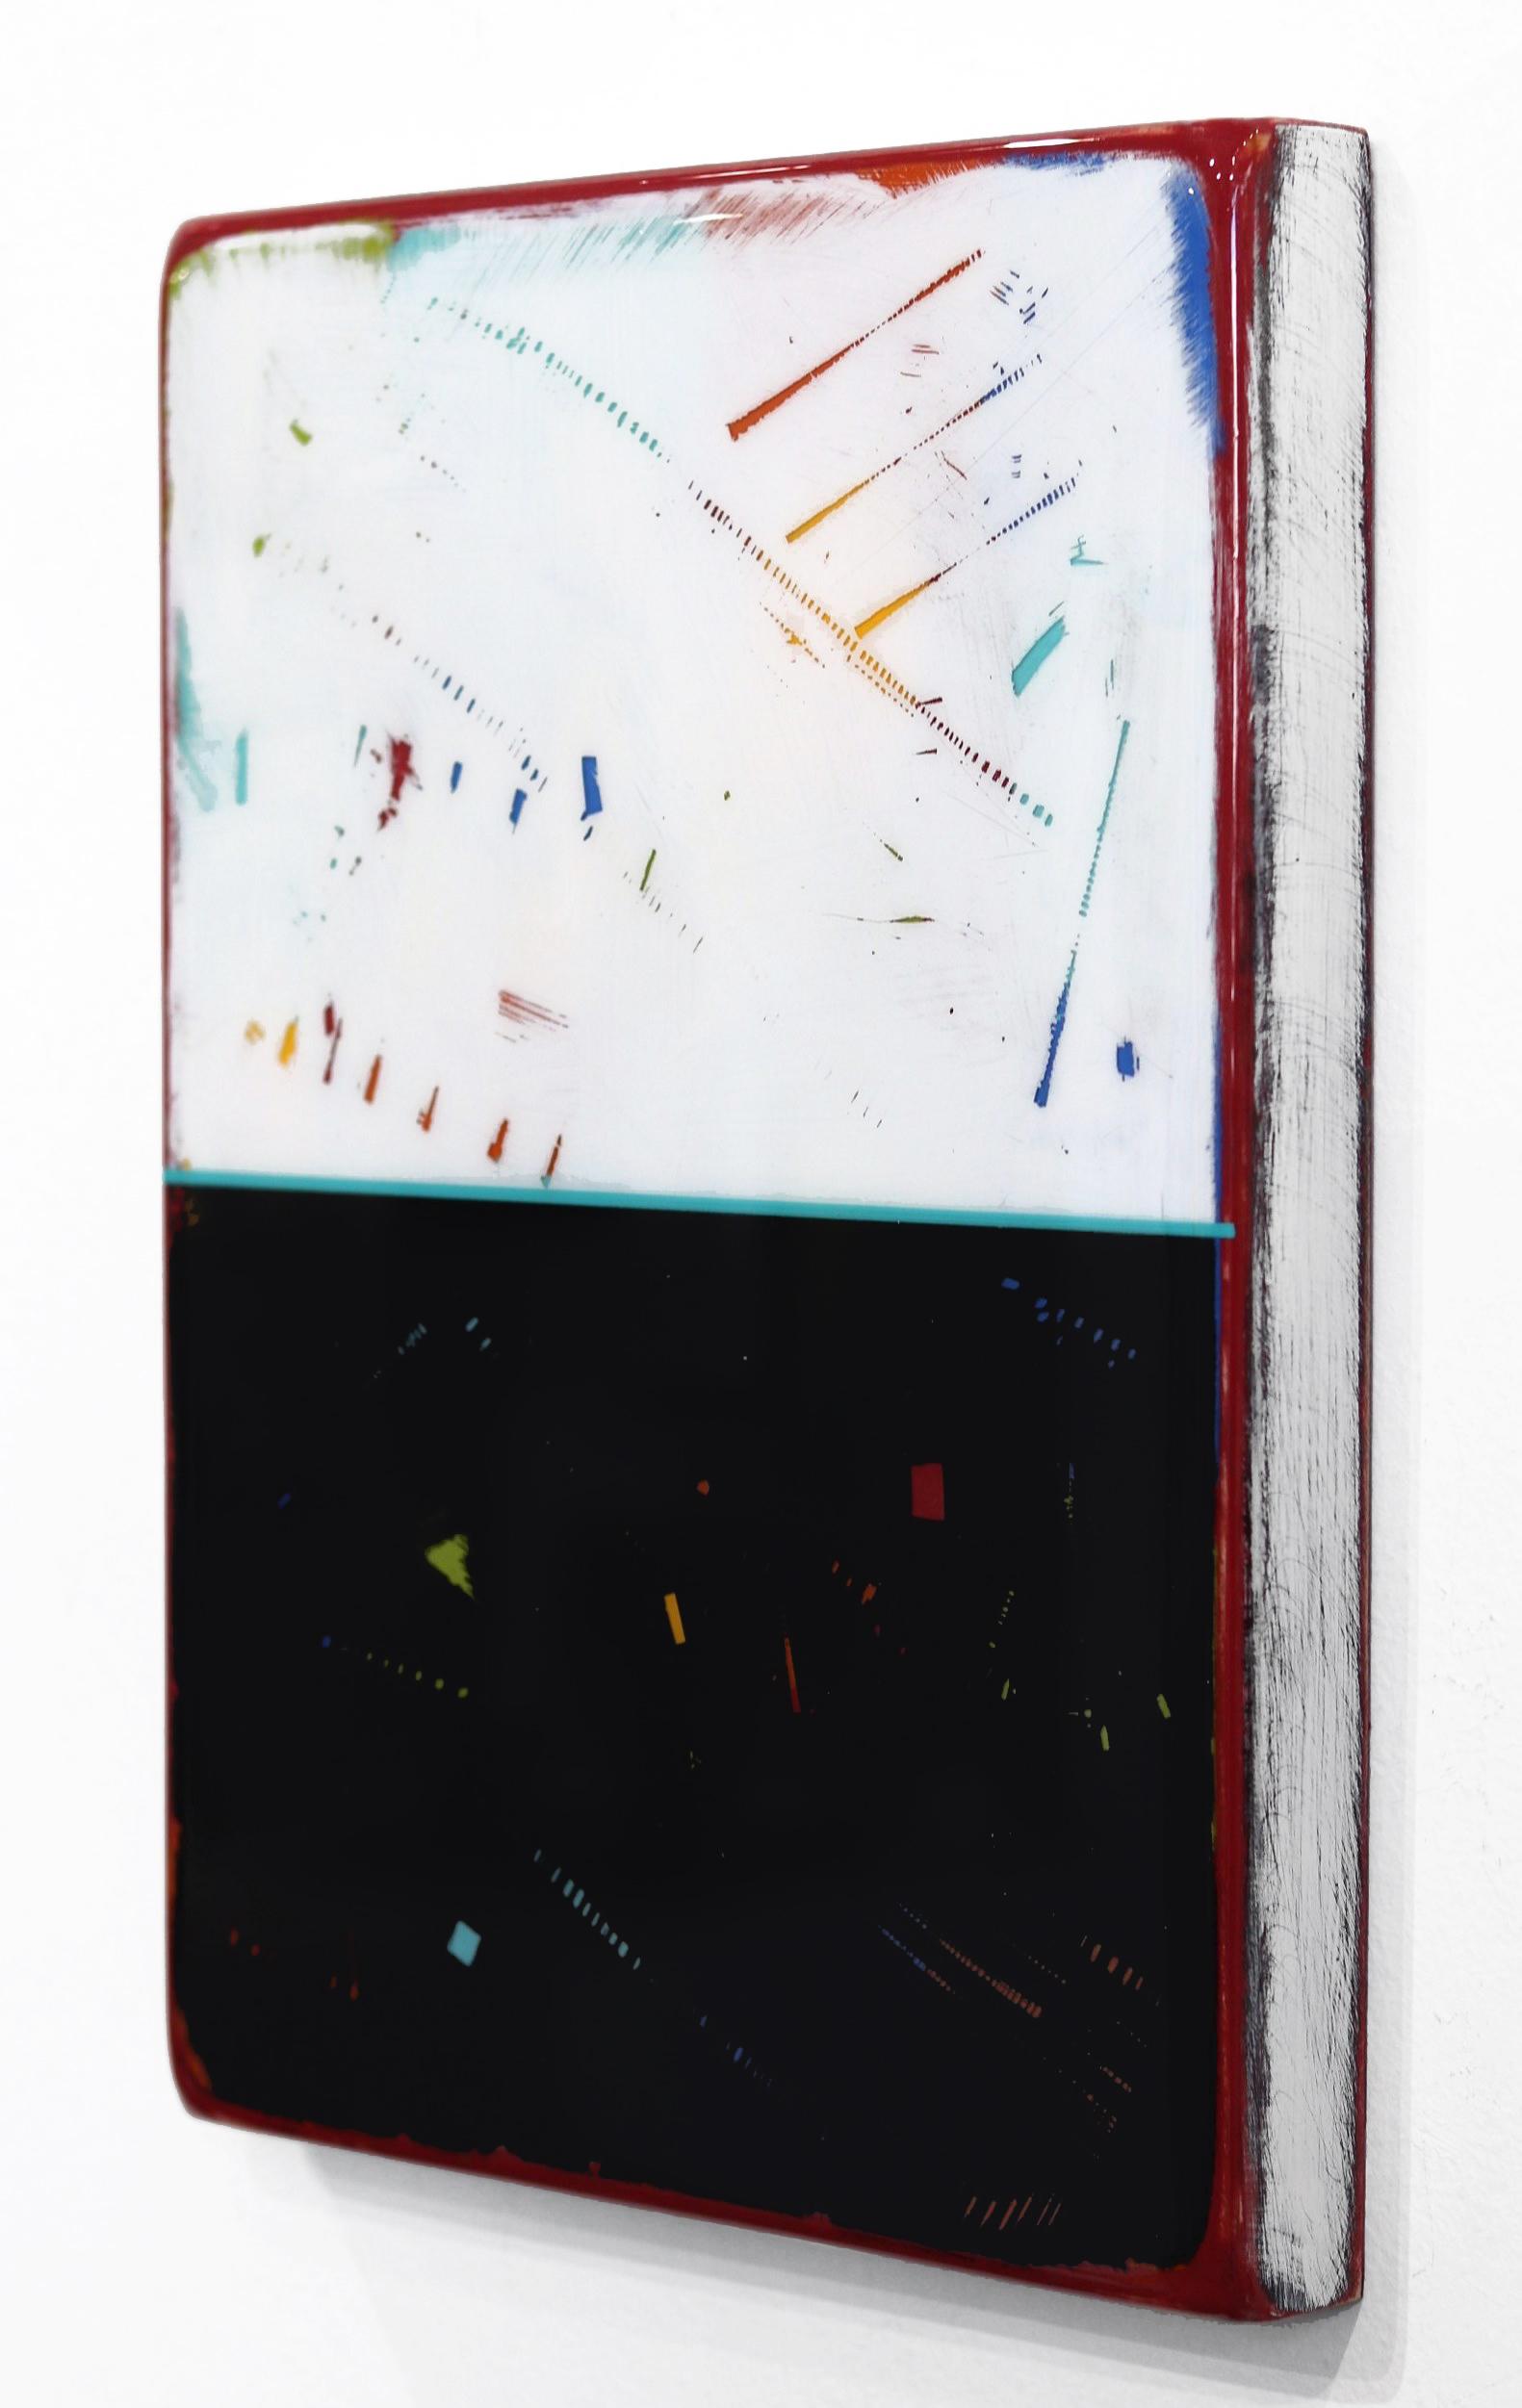 Ricky Hunts minimalistische Mixed-Media-Wandkunst ist von seiner turbulenten Vergangenheit beeinflusst, die zu einem Paradigmenwechsel in Sachen Kreativität und Leben führte. Er überzieht die Holzplatte mit Schichten von Acrylfarbe und entfernt